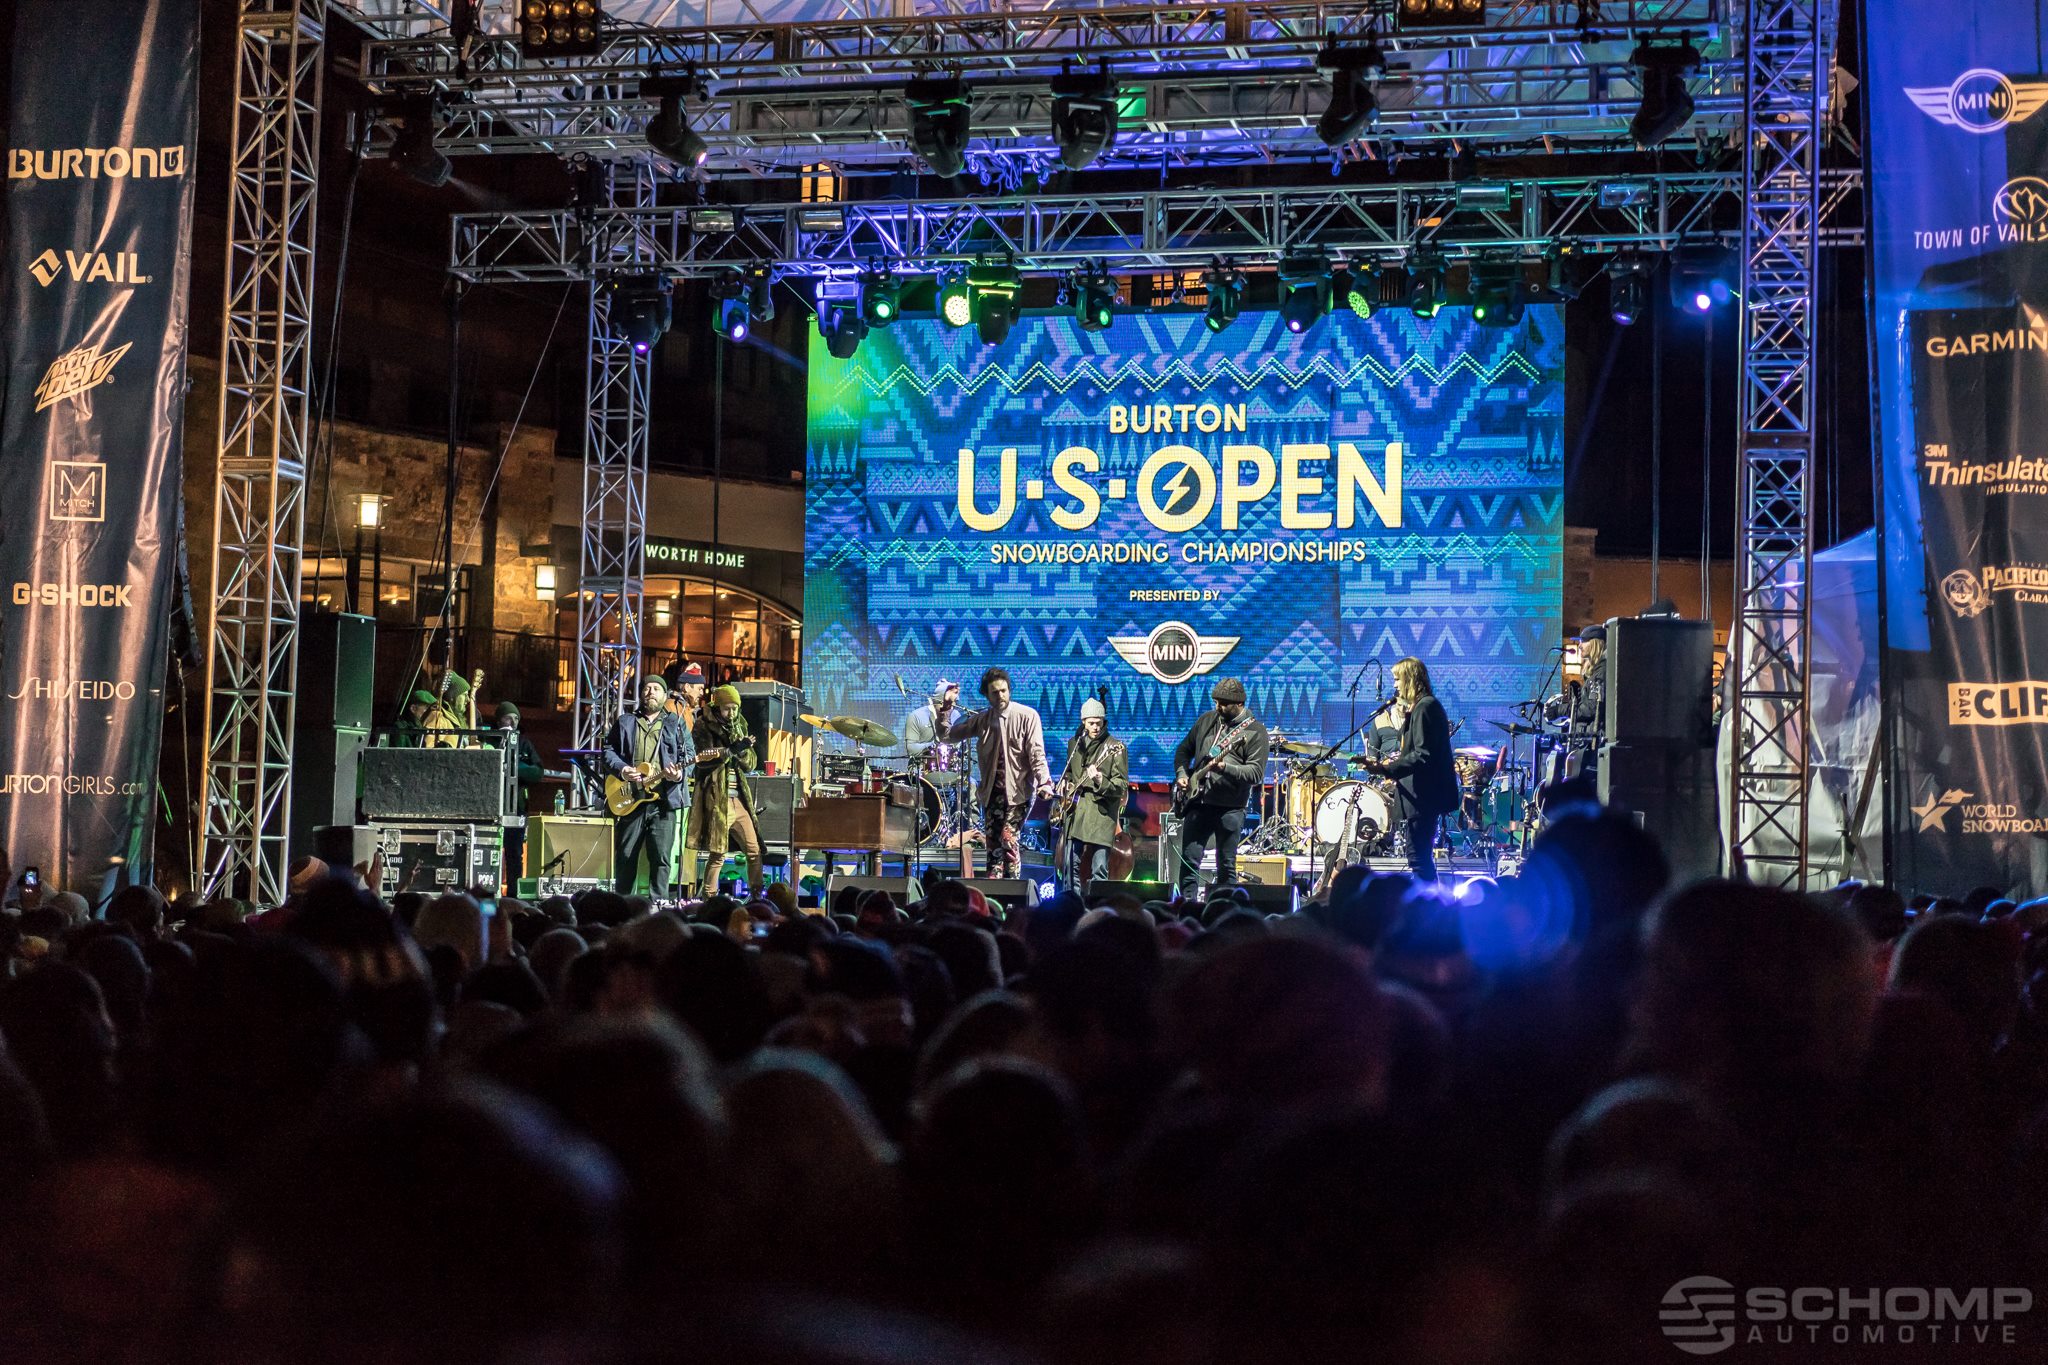 Burton US open 2015, Burton US open 2016, Guide to burton us open 2016, Burton US Open concerts 2016